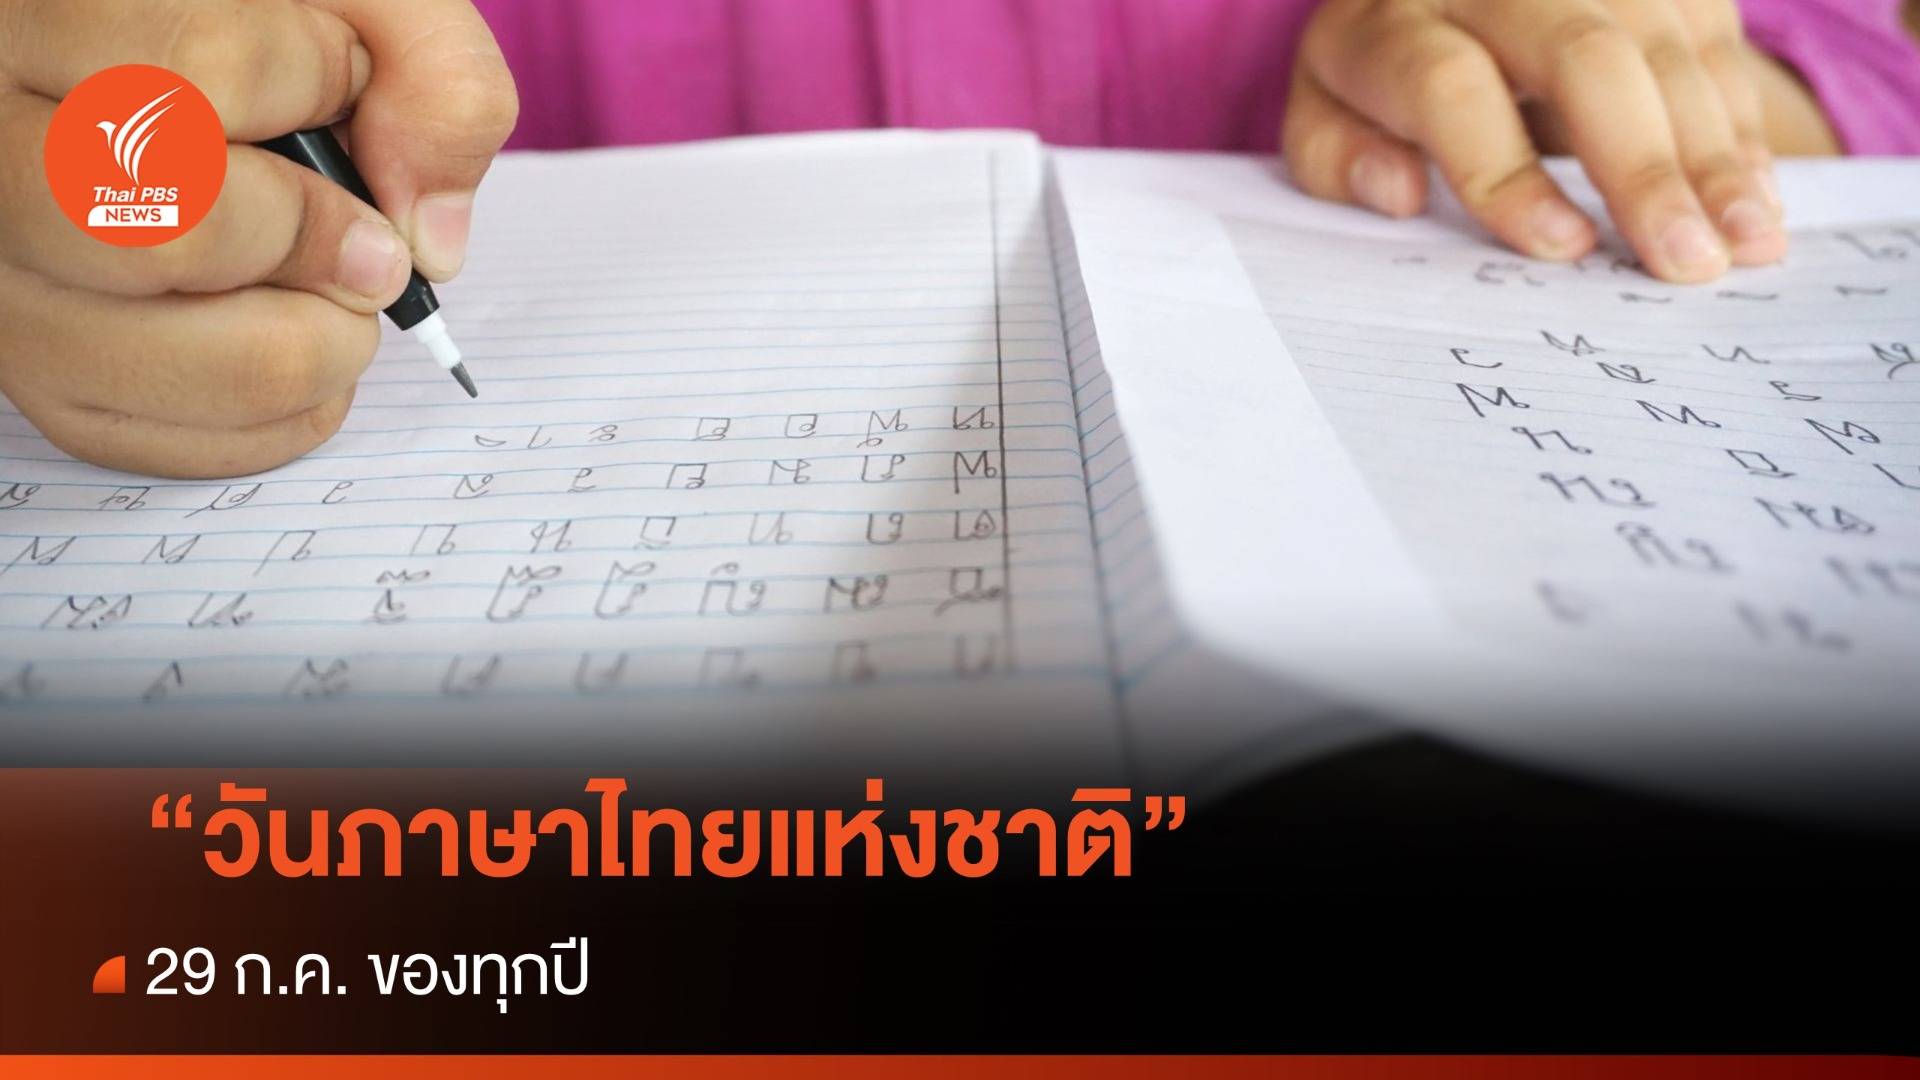 29 ก.ค.ของทุกปี "วันภาษาไทยแห่งชาติ"